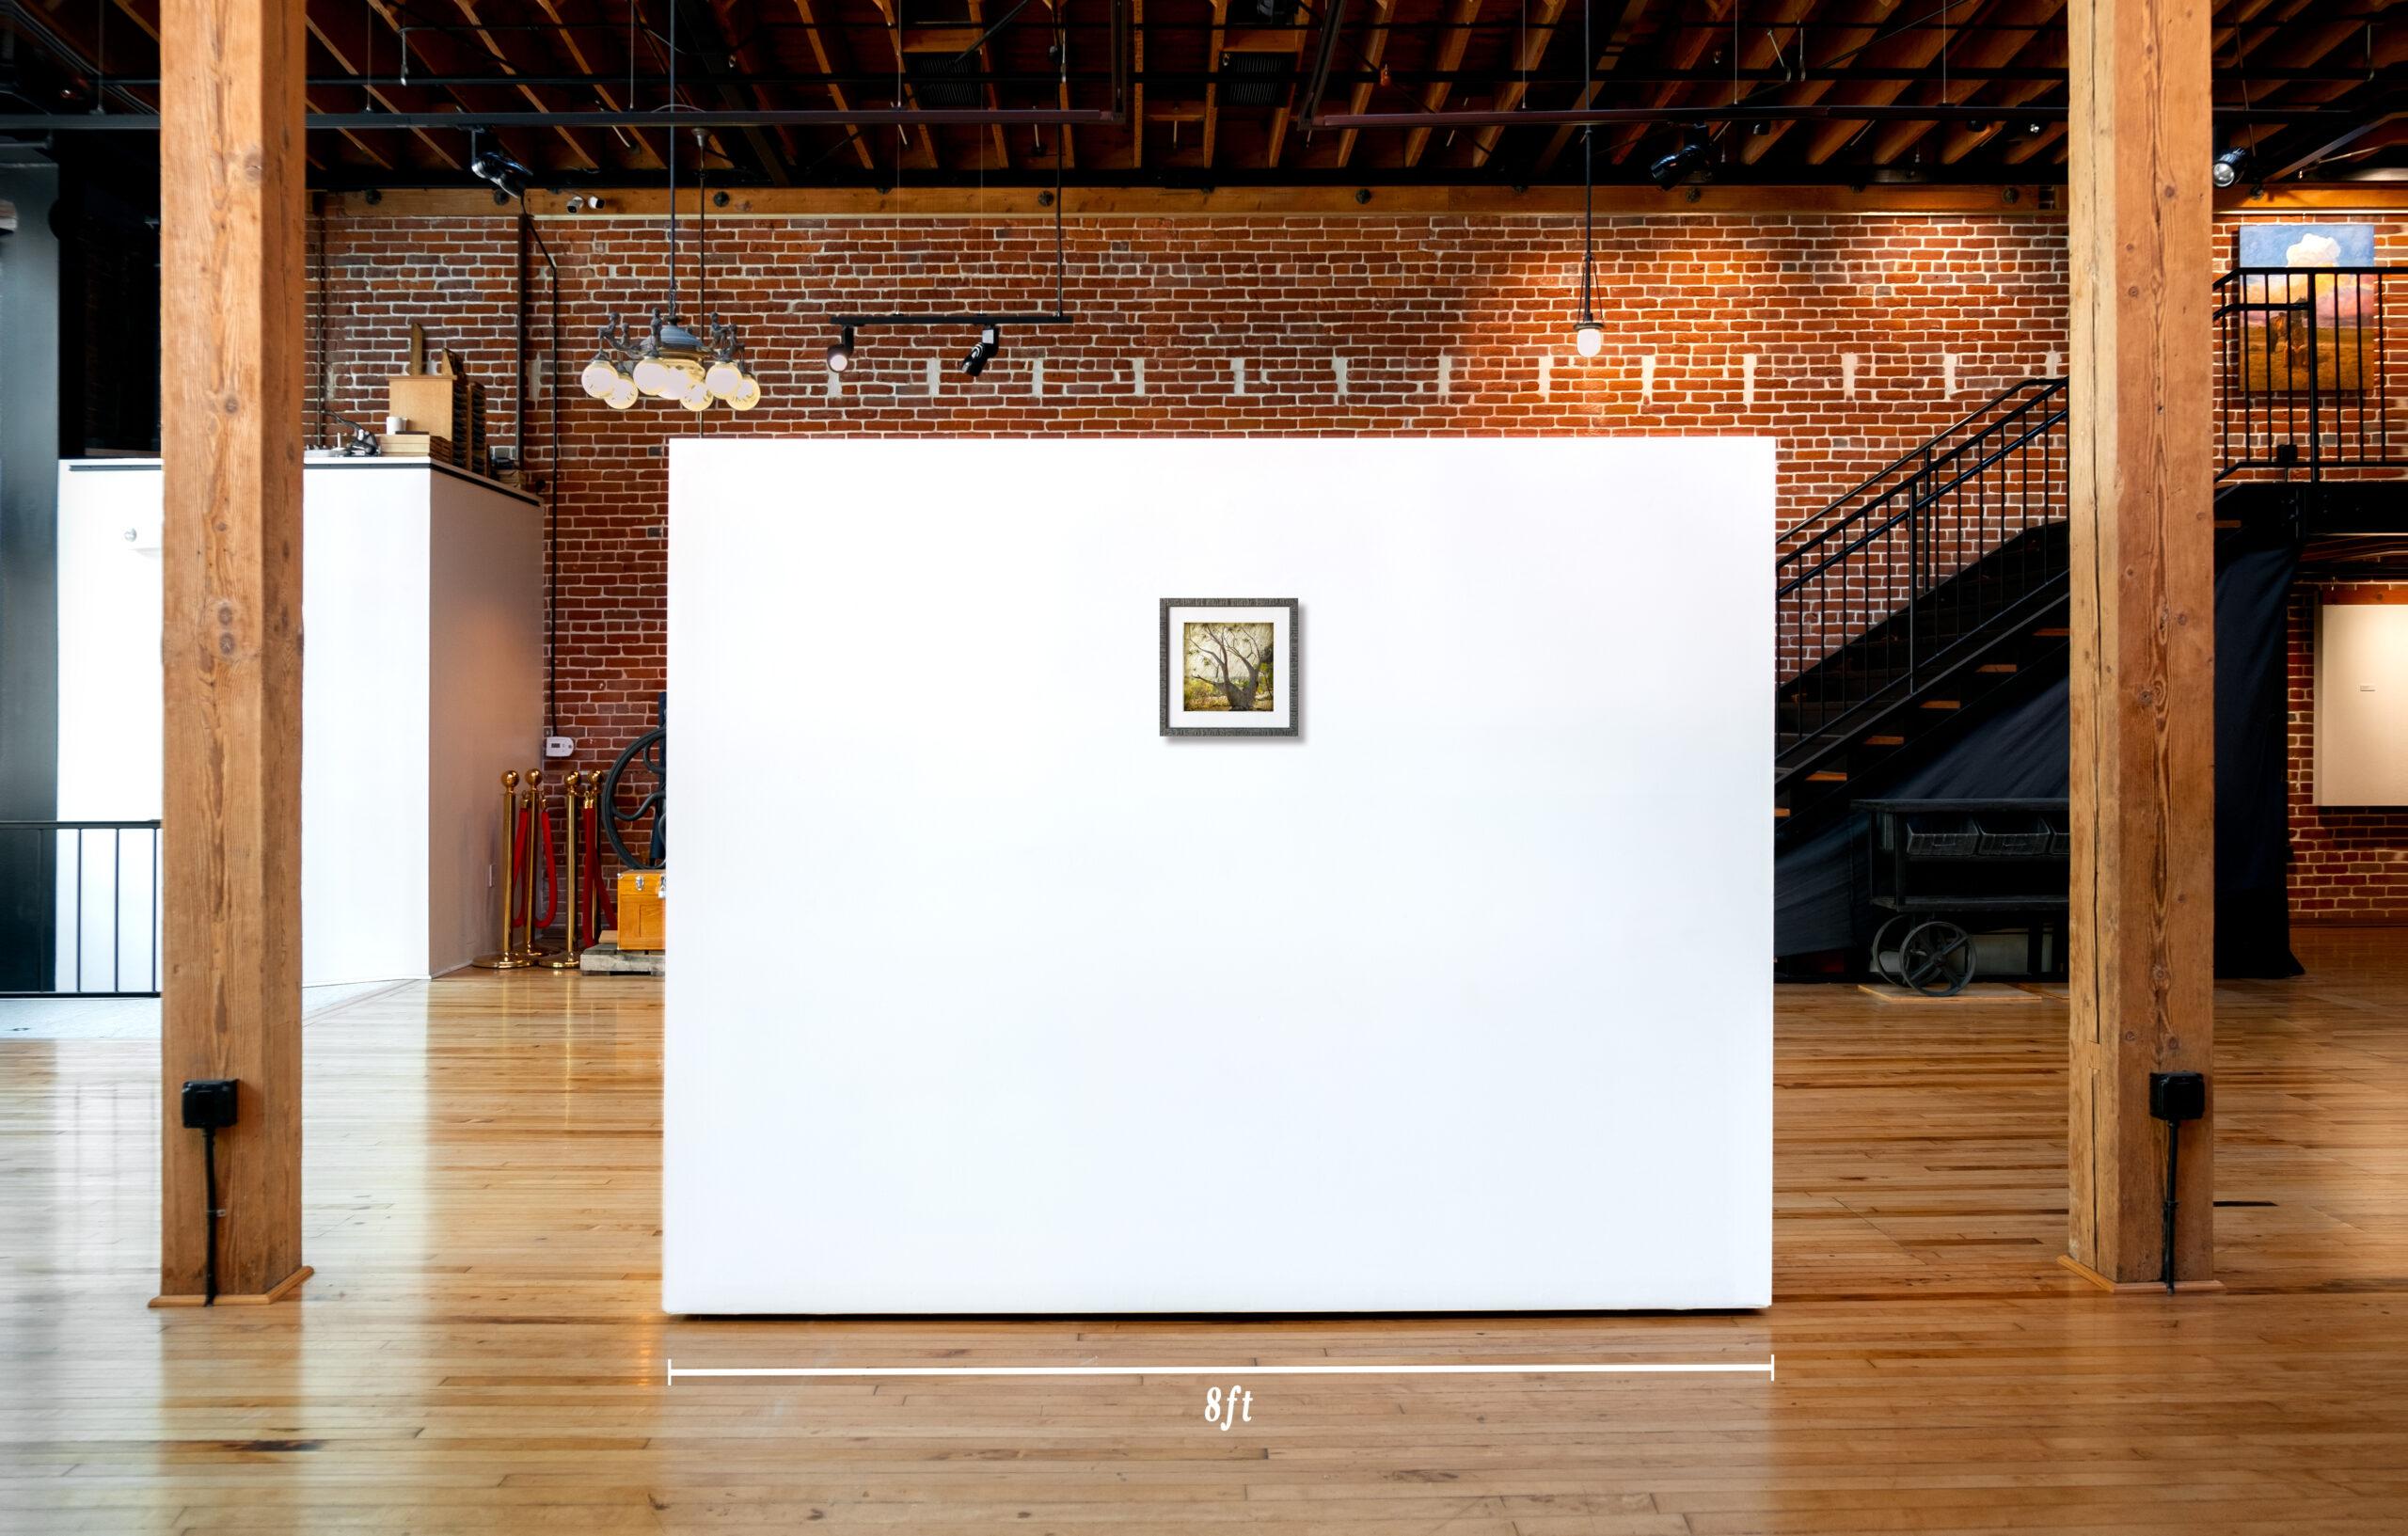 Dies ist ein einzigartiger digitaler Landschaftsdruck der südkalifornischen Künstlerin Denise Strahm. Seine Größe beträgt 12